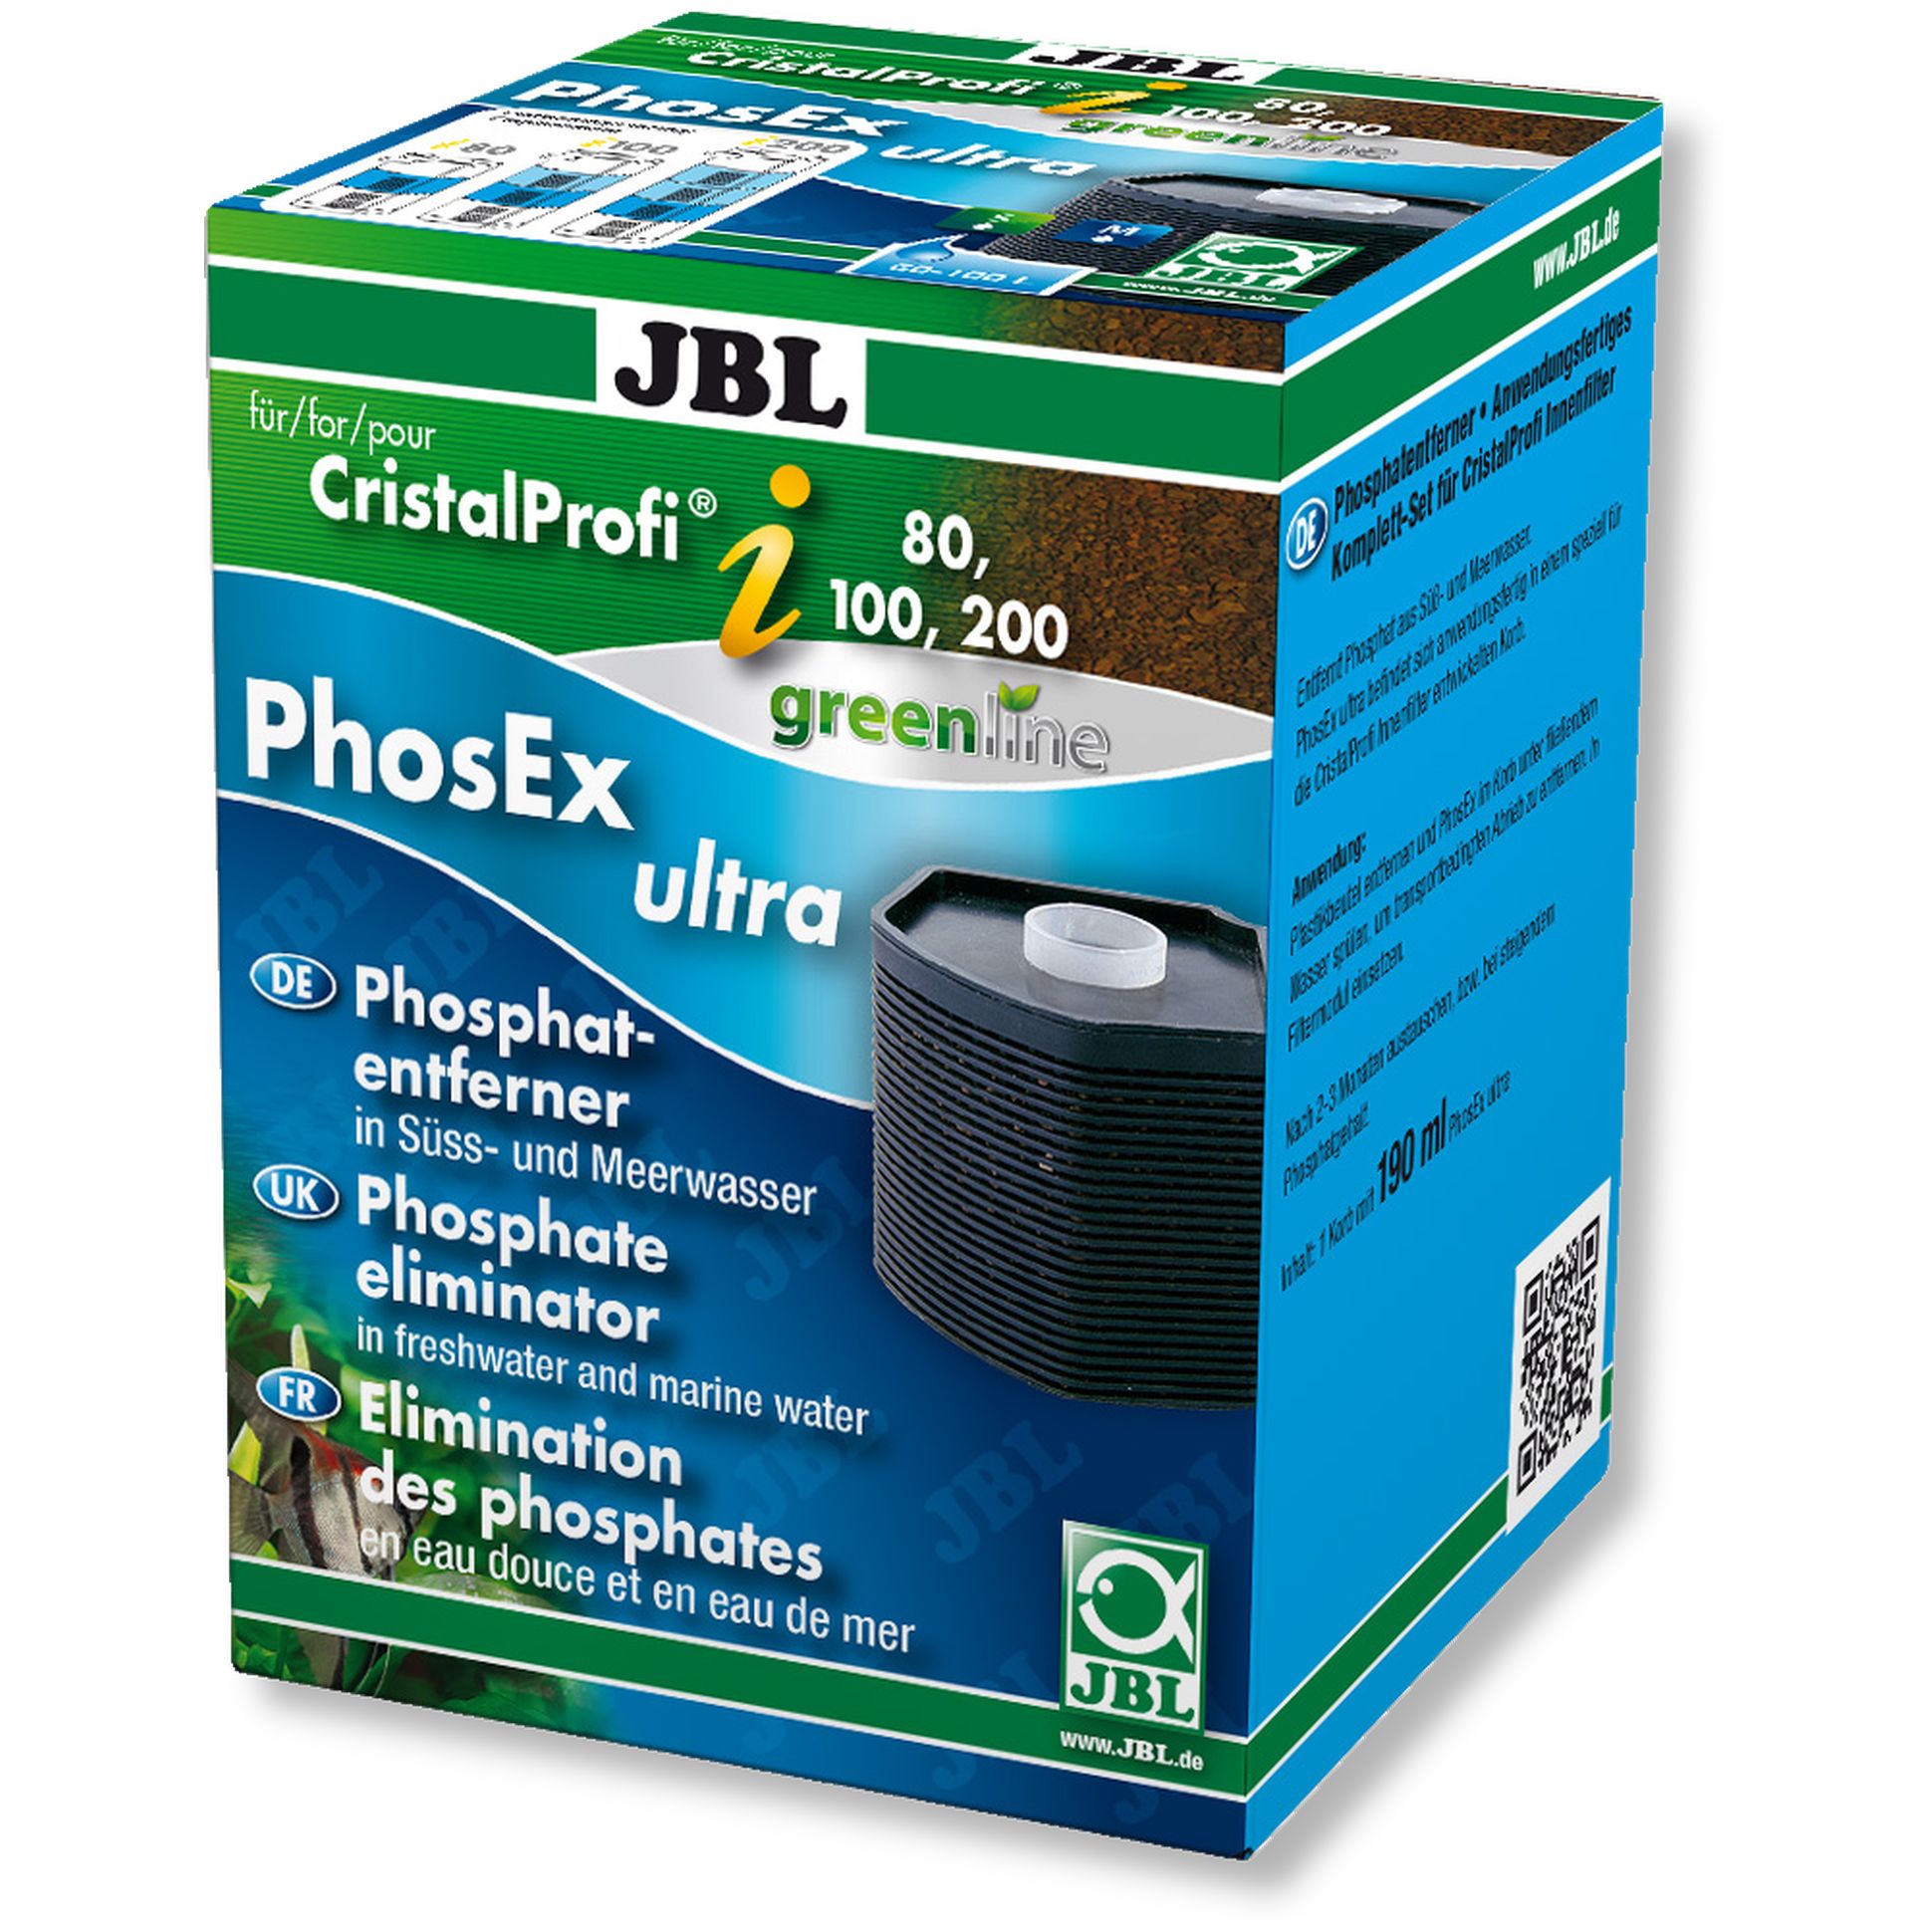 Наполнитель для внутреннего фильтра JBL PhosEx Ultra для CP i60/80/100/200, гравий, 152 г